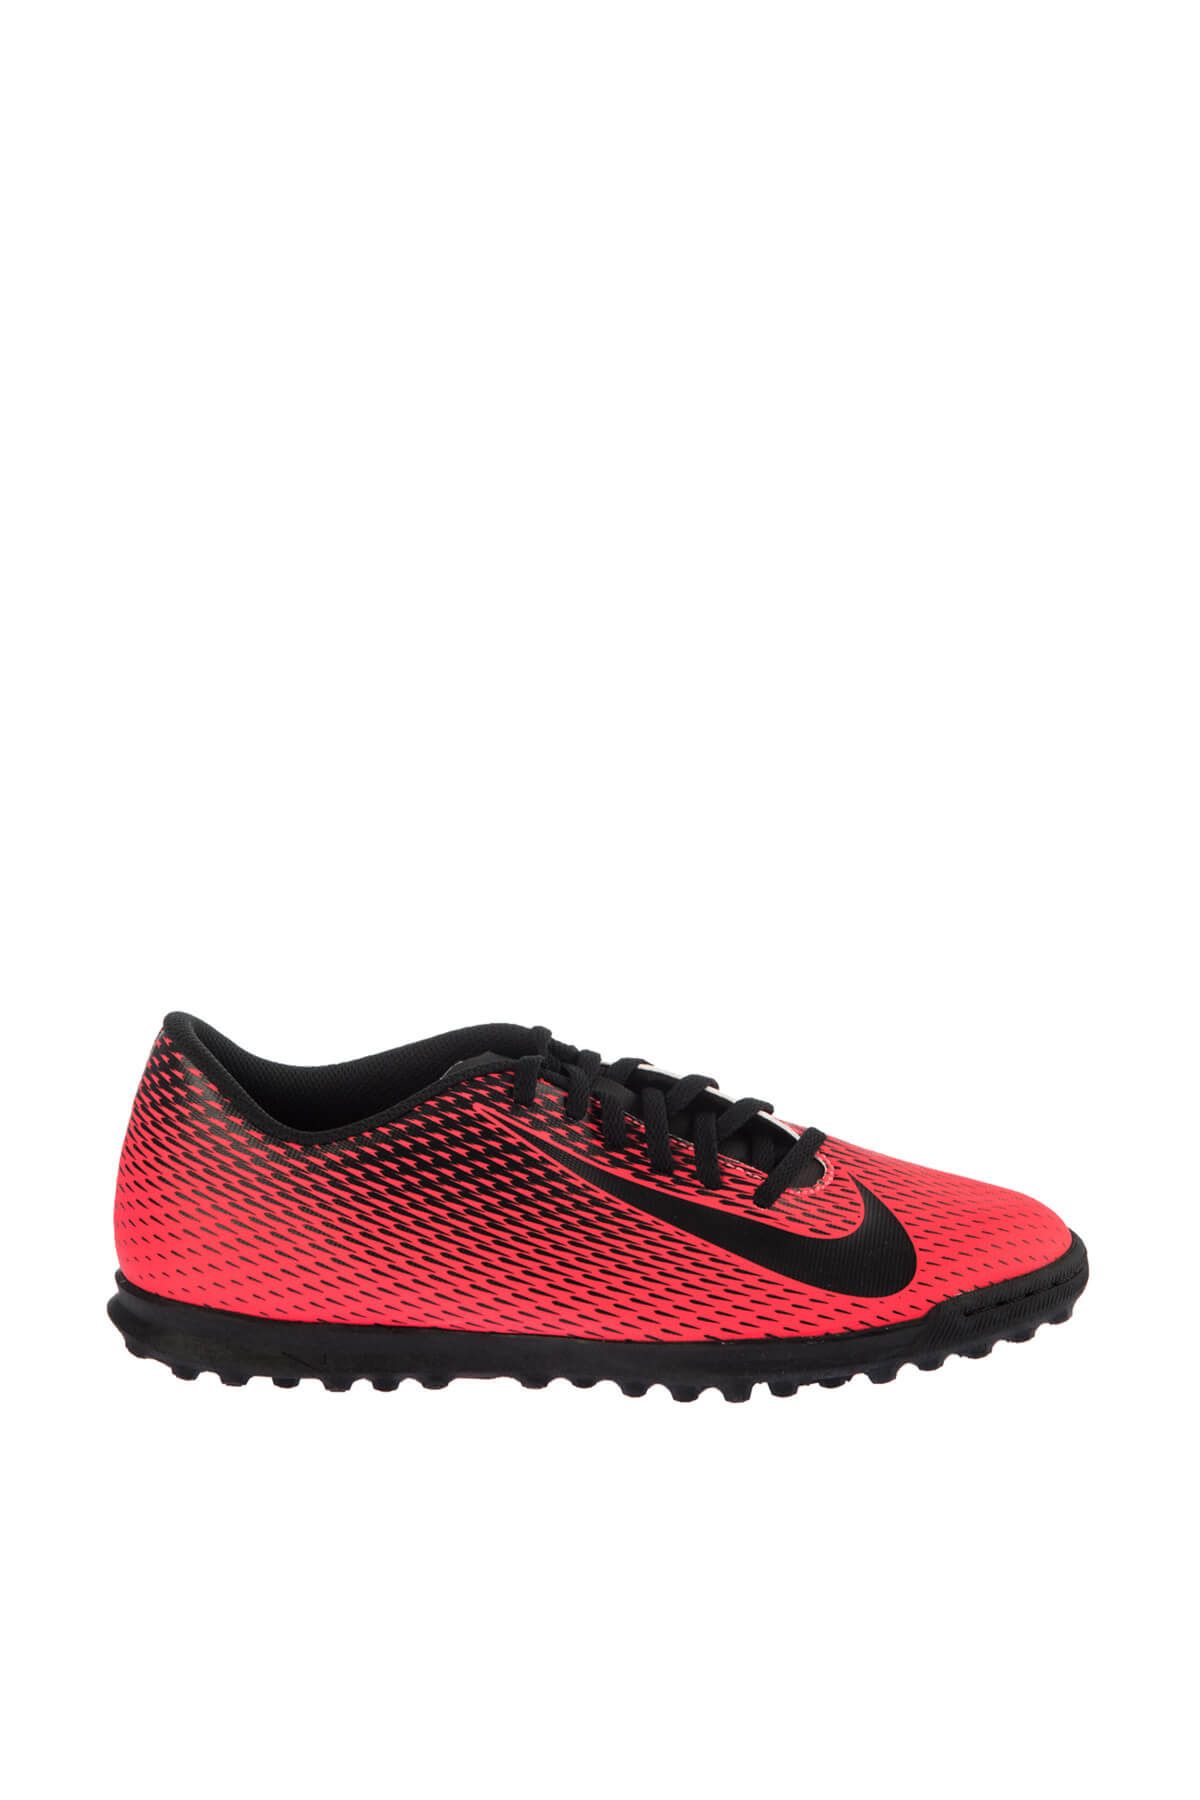 Nike Halı Saha Ayakkabı/Krampon - Bravata II TF Halı Saha Ayakkabı - 844437-601